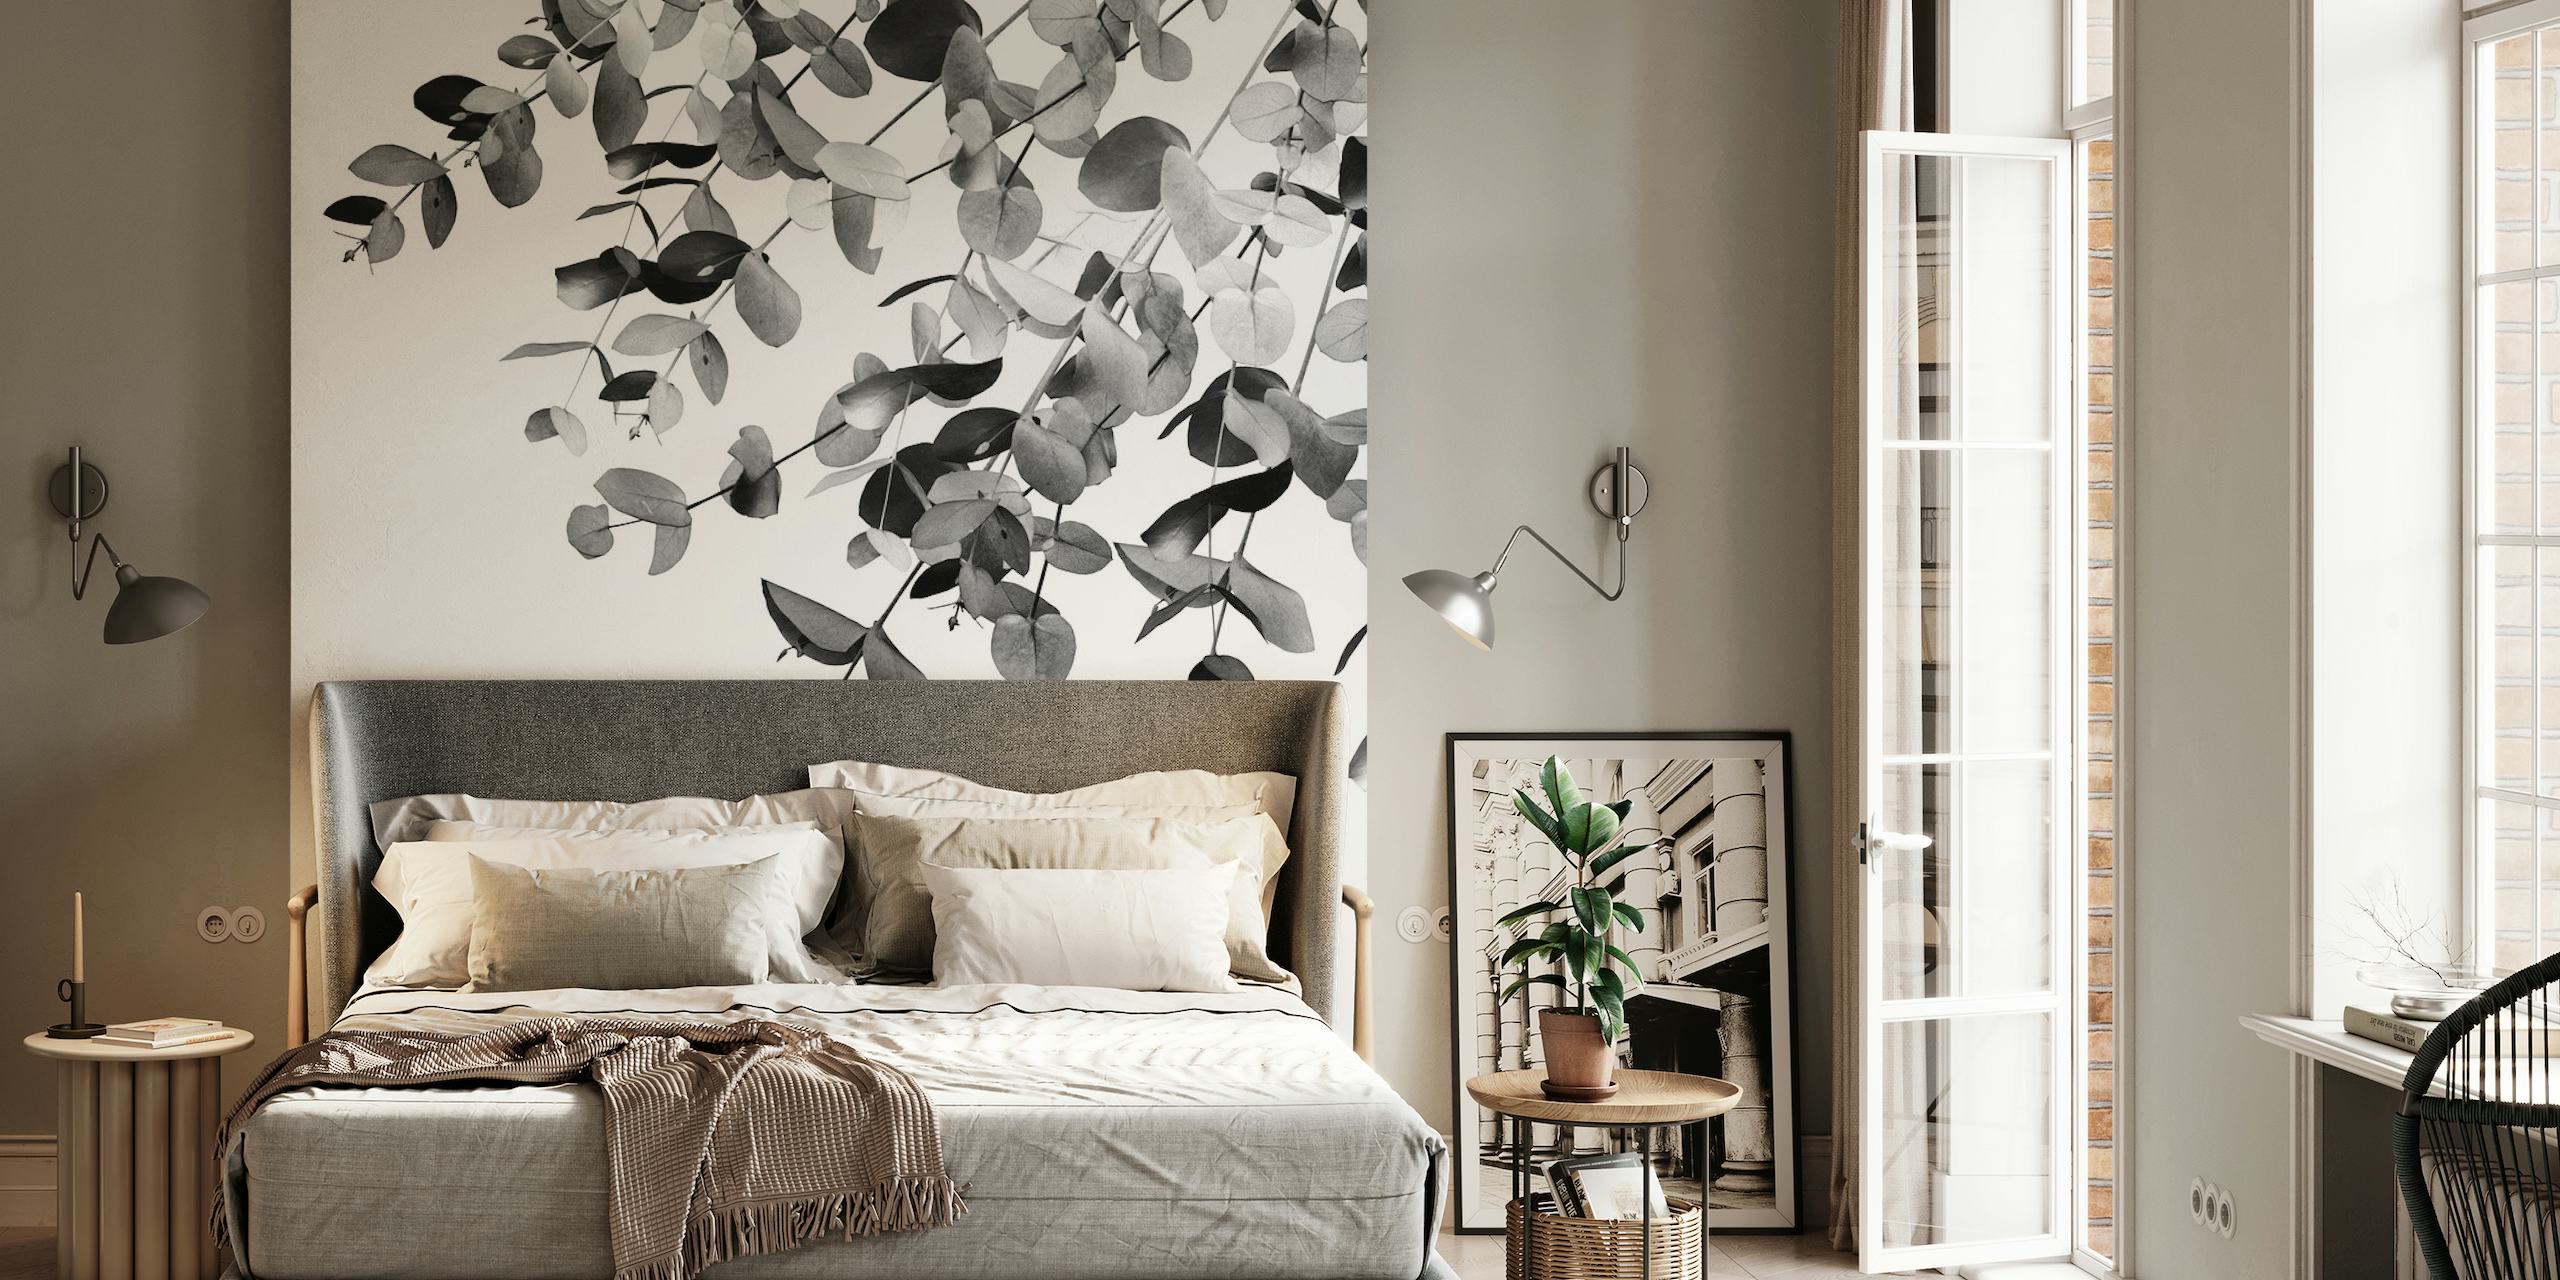 Monochrome eucalyptusbladeren muurschildering voor een rustig interieur